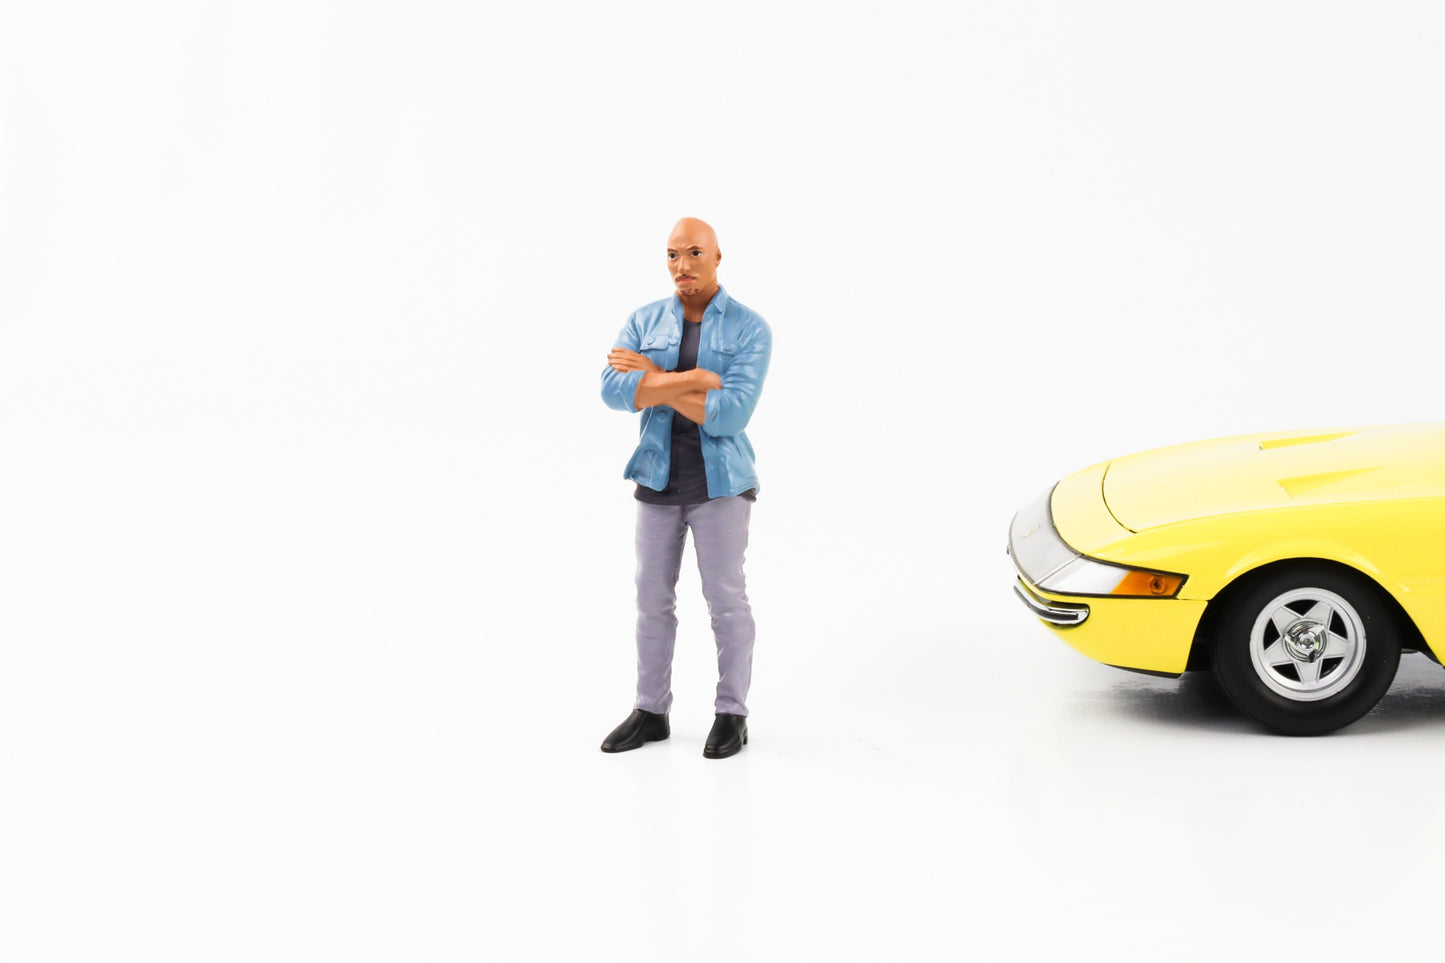 1:18 Figure Car Meet 3 Bald Man with Shirt American Diorama Figures